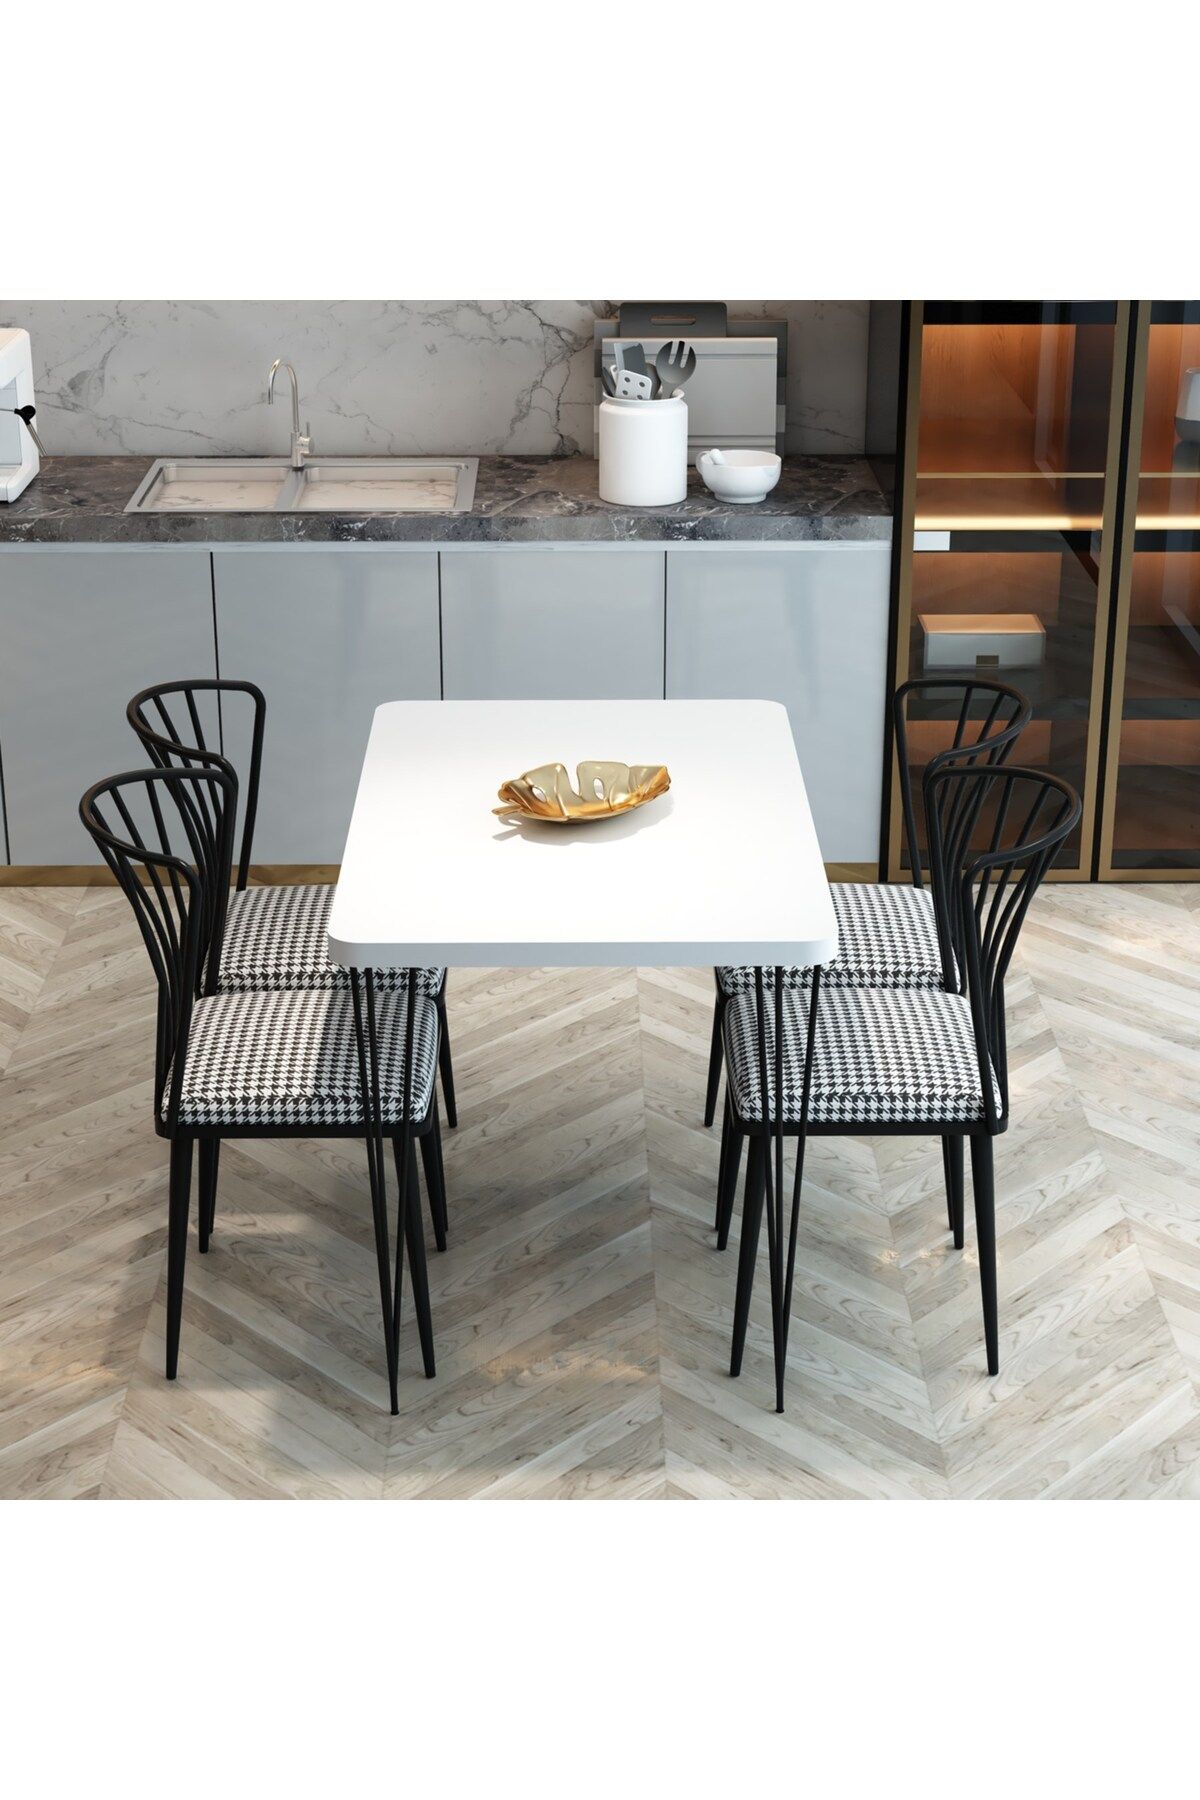 FurnatureDesign Yemek Masası Takımı 70x110 Piramit Ayaklı Yemek Masası + 4 Adet Sandalye - Beyaz